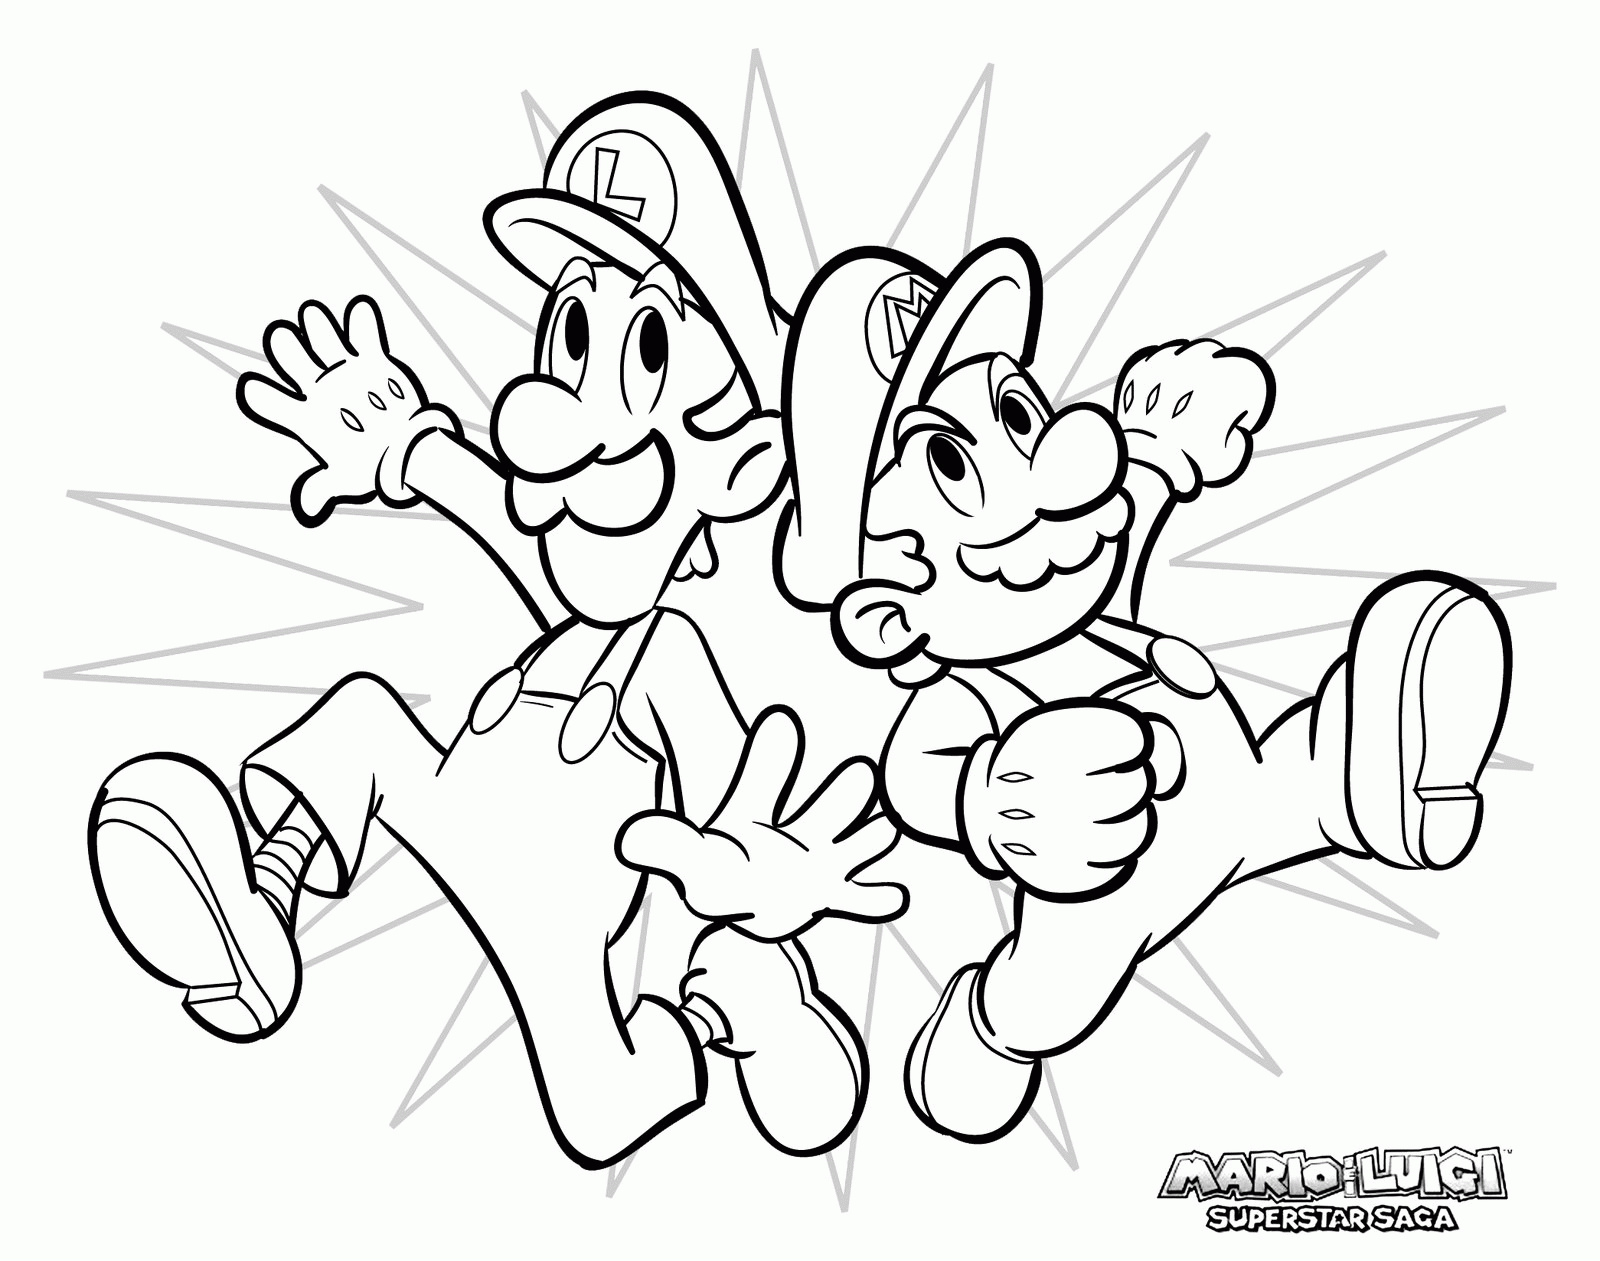 Los hermanos Mario y Luigi